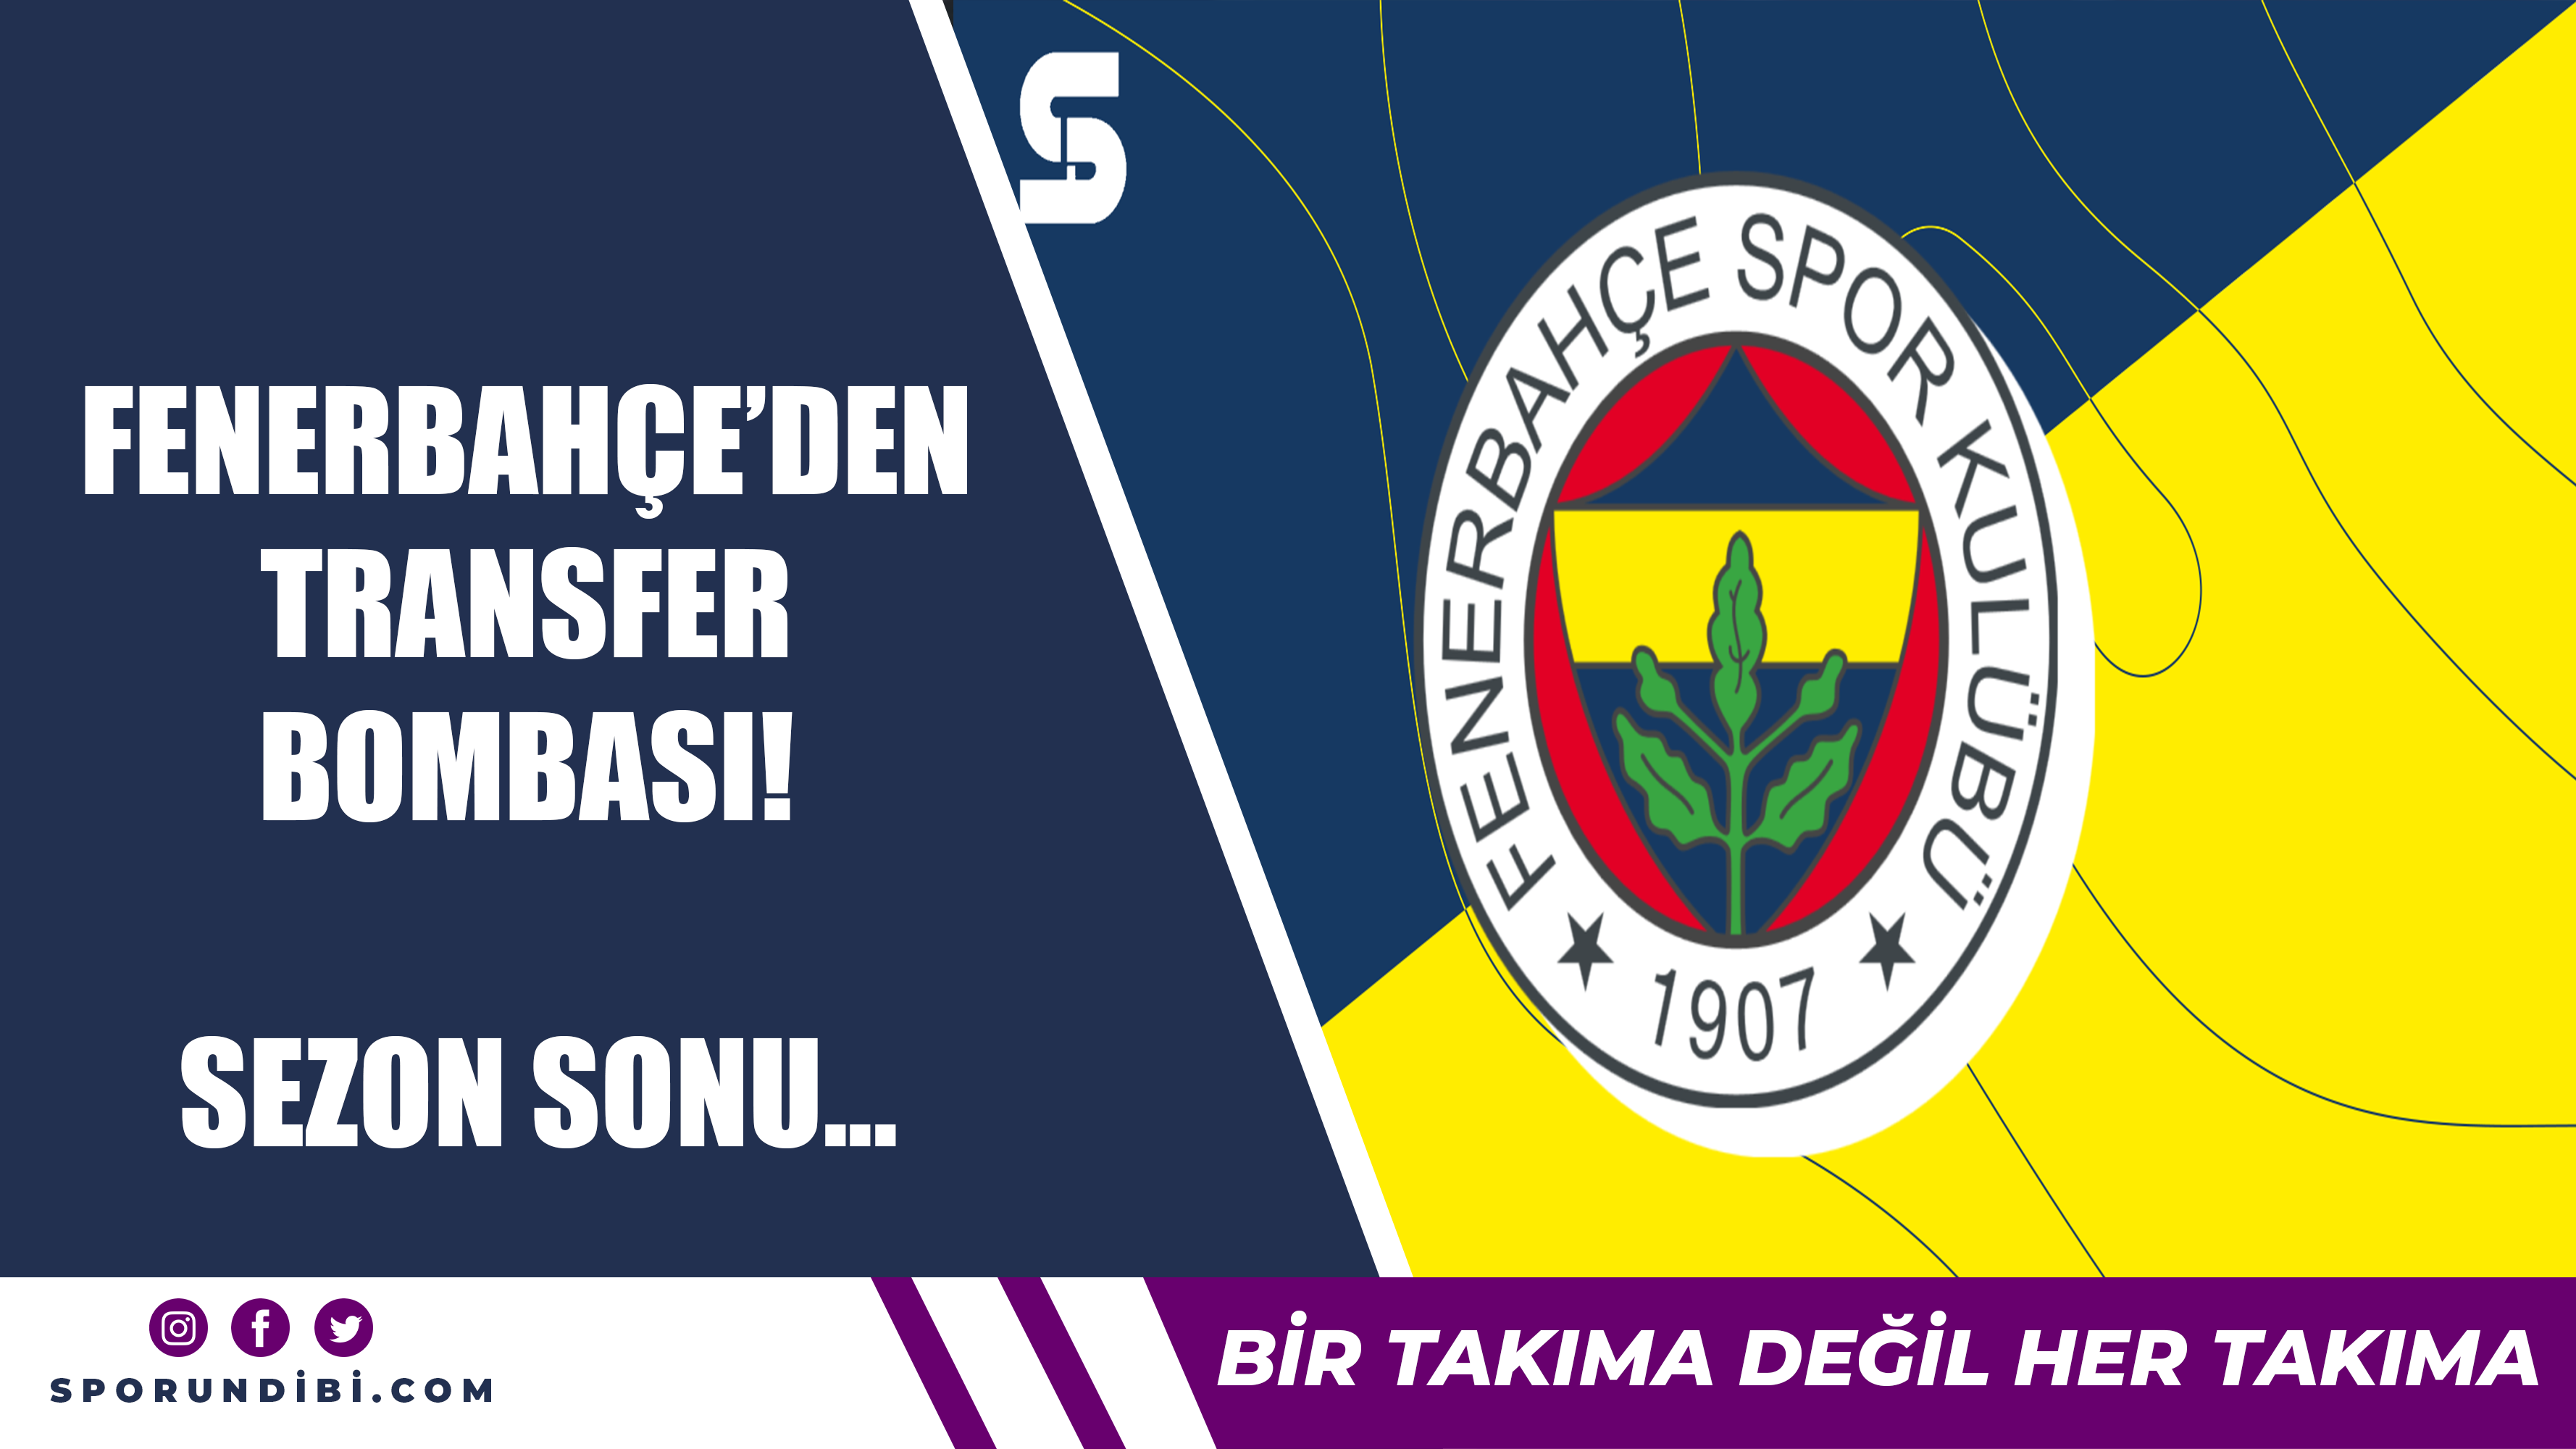 Fenerbahçe'den transfer bombası! Sezon sonu...